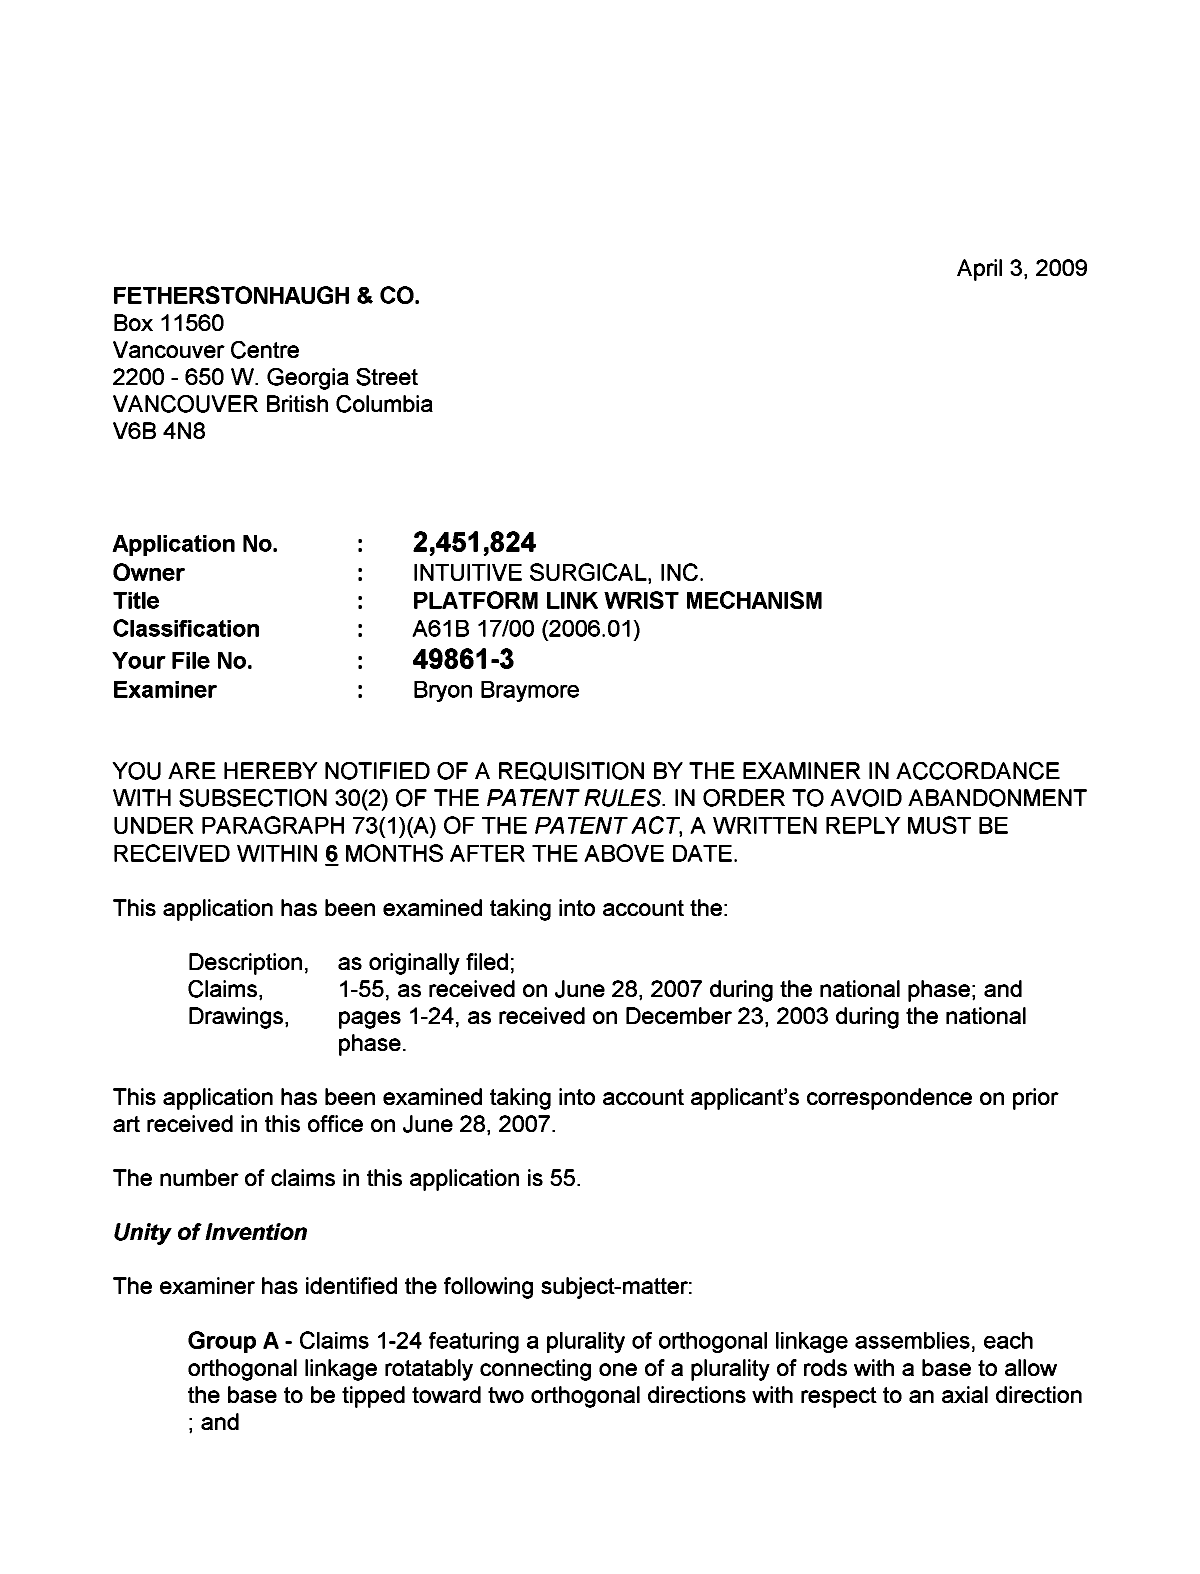 Document de brevet canadien 2451824. Poursuite-Amendment 20090403. Image 1 de 3